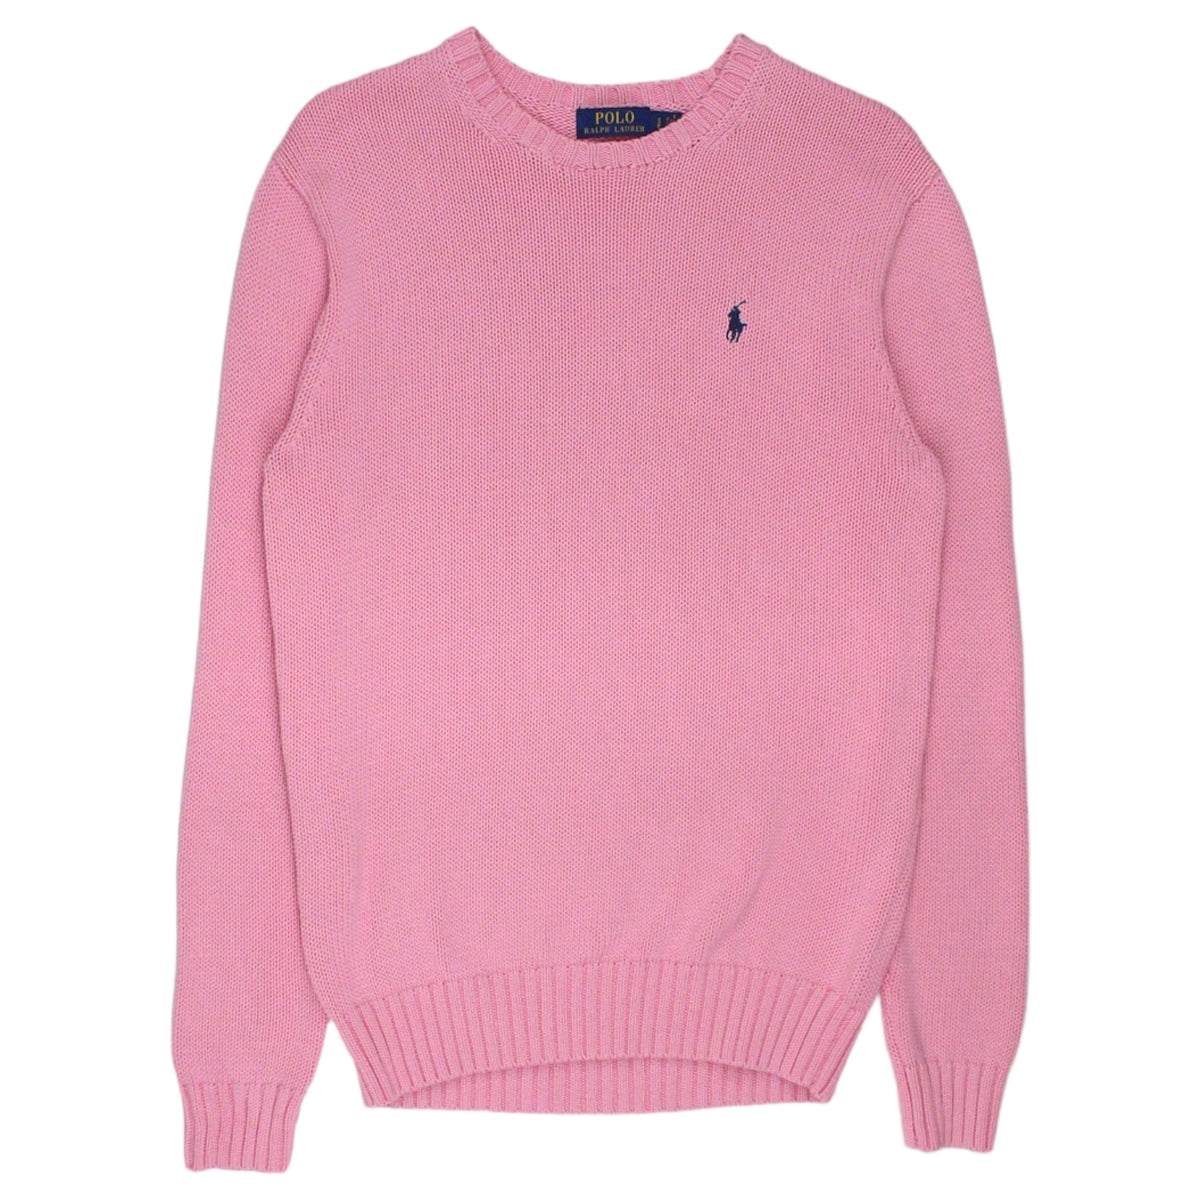 Polo Ralph Lauren Pink Knit Jumper